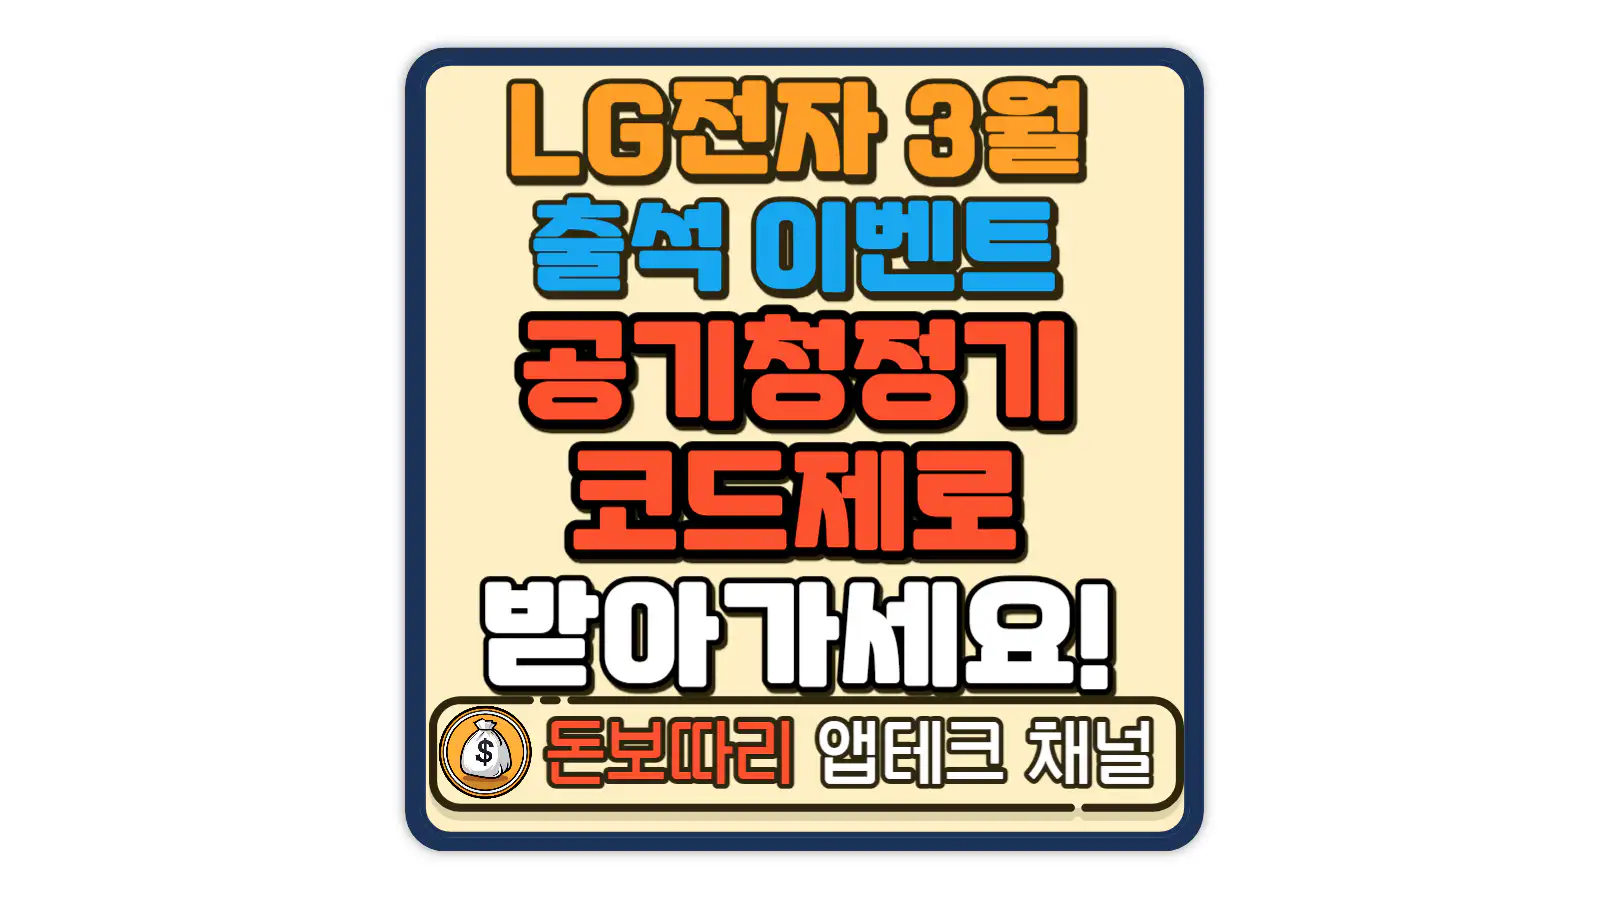 LG전자-멤버십-3월-출석체크-이벤트